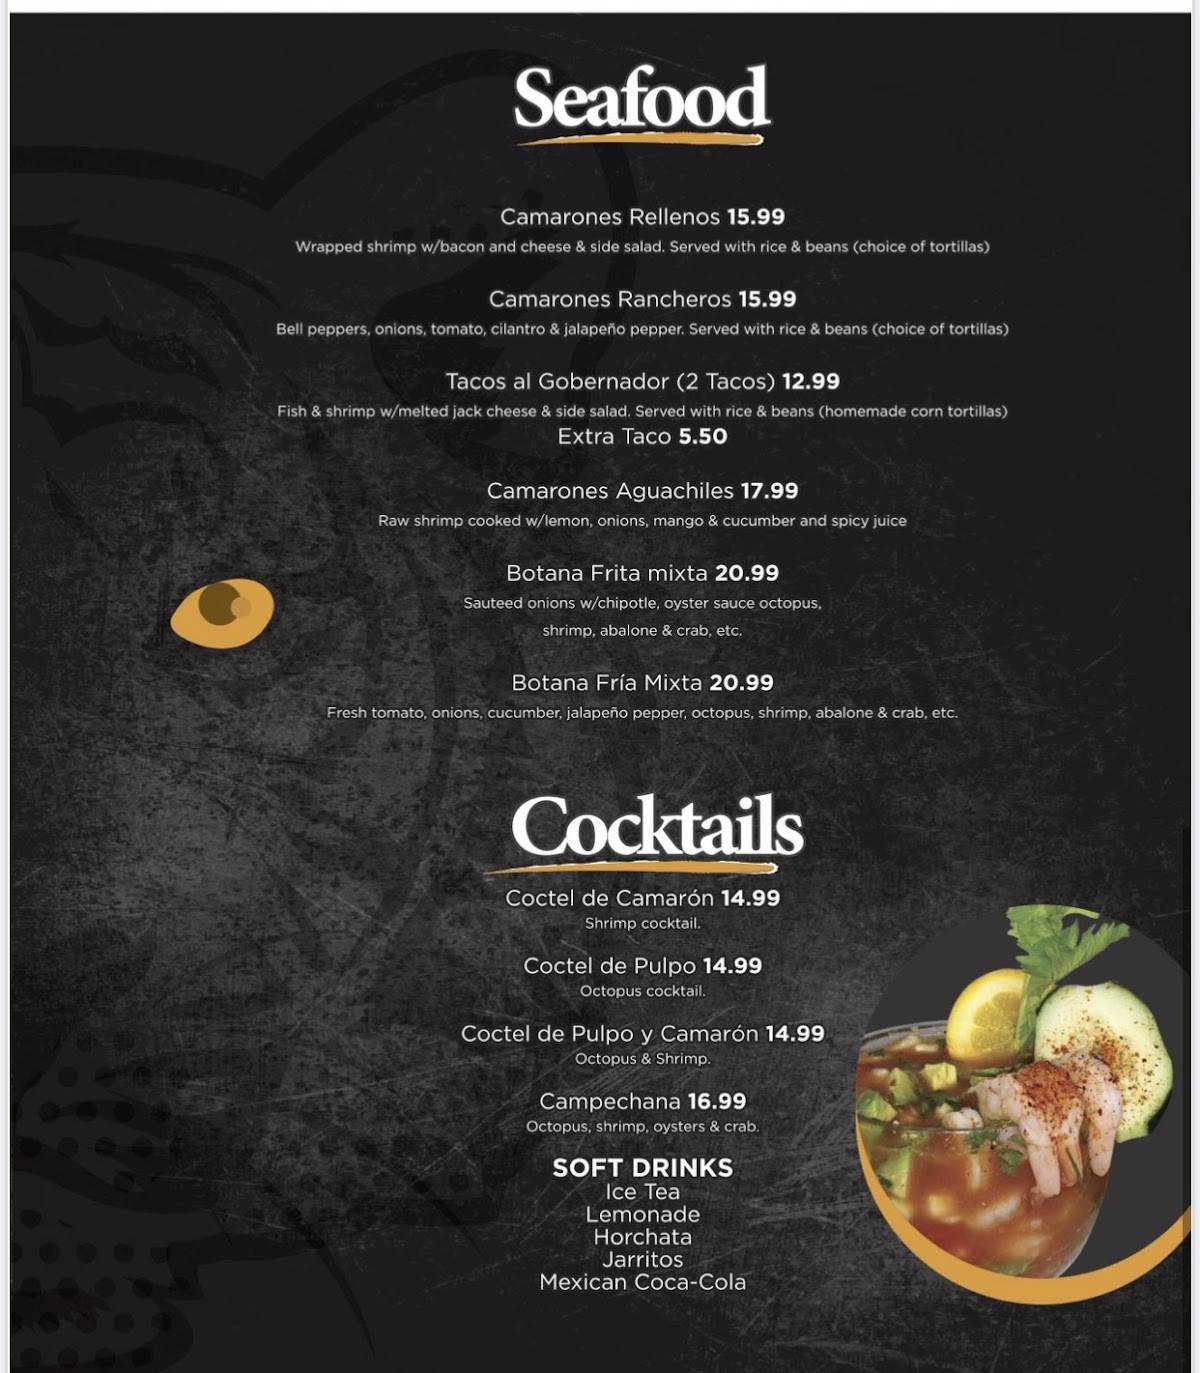 The Safari Restaurant menu